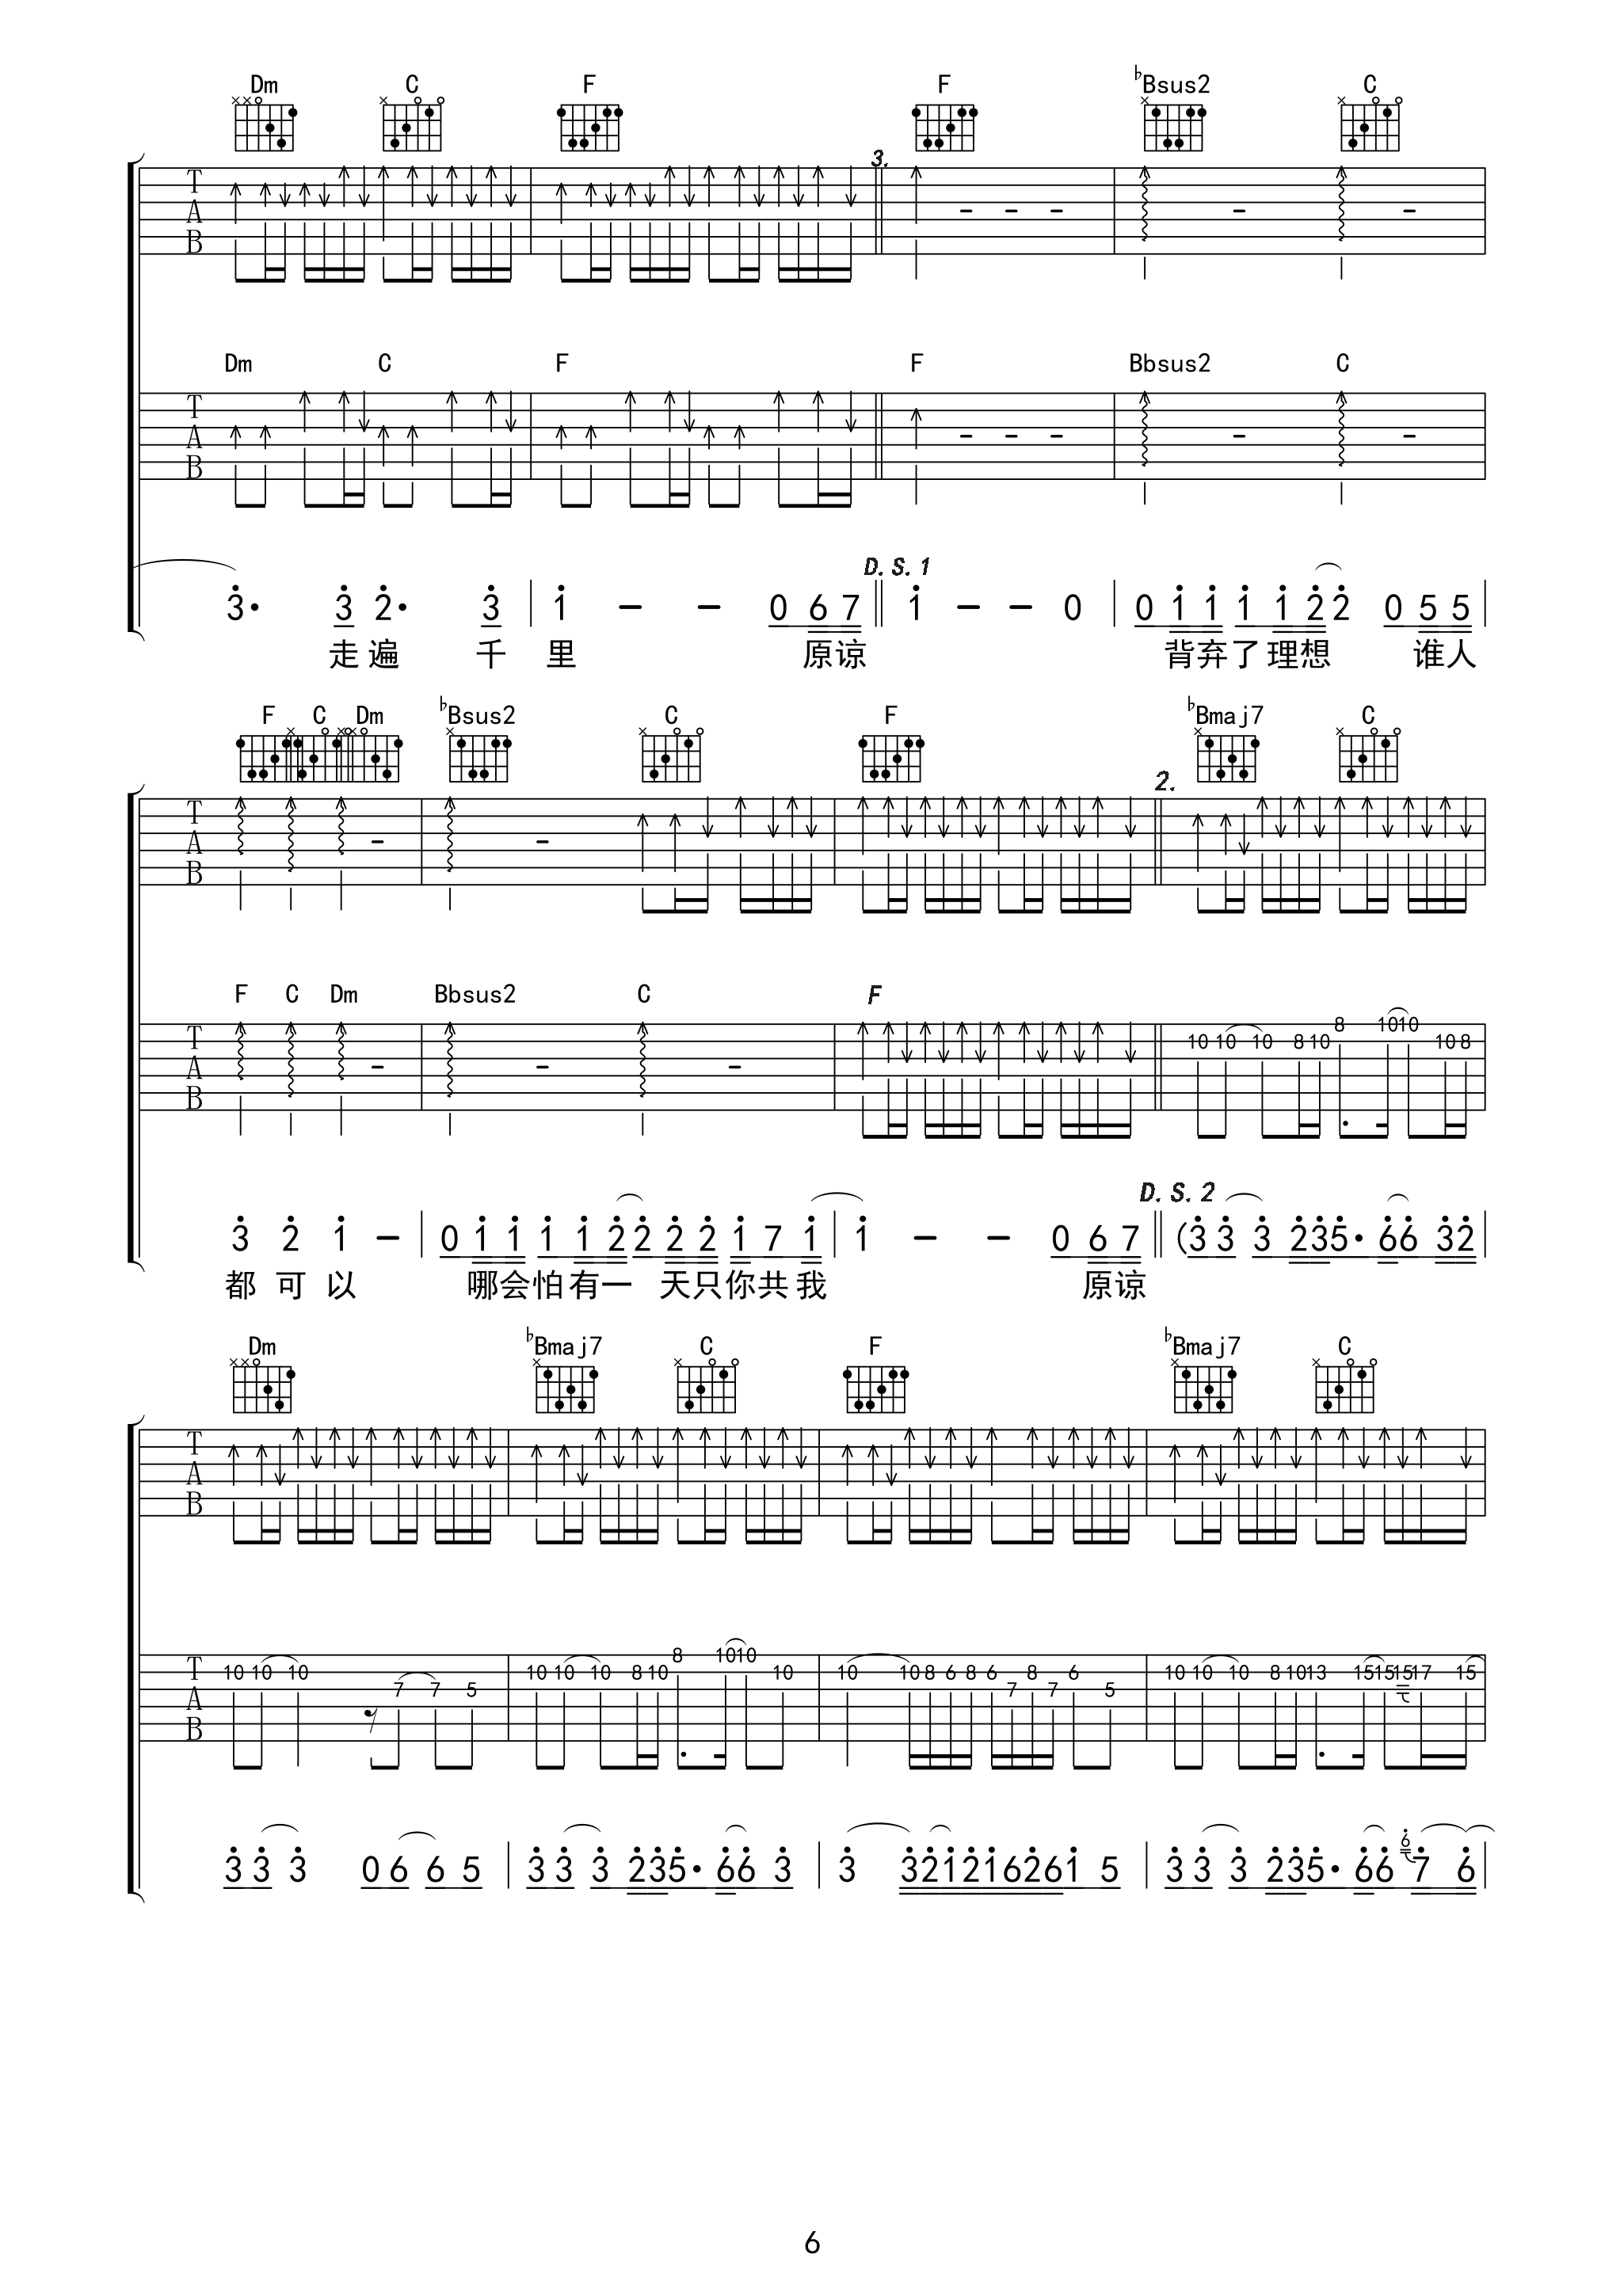 海阔天空吉他谱93版不插电弦心距出品吉他谱第(6)页